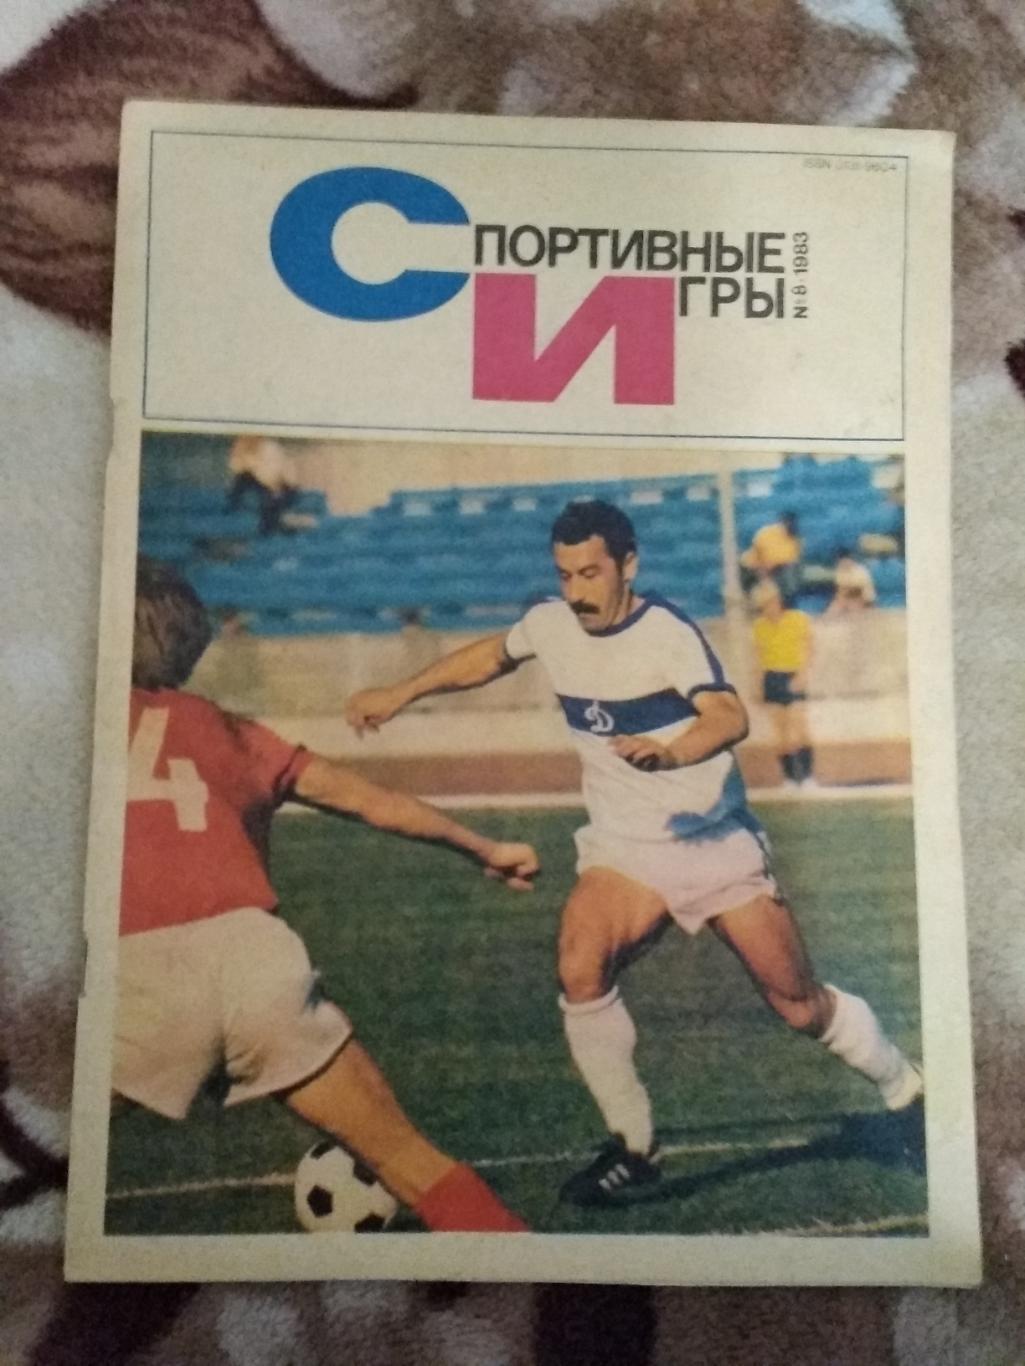 Журнал.Спортивные игры № 8 1983 г.